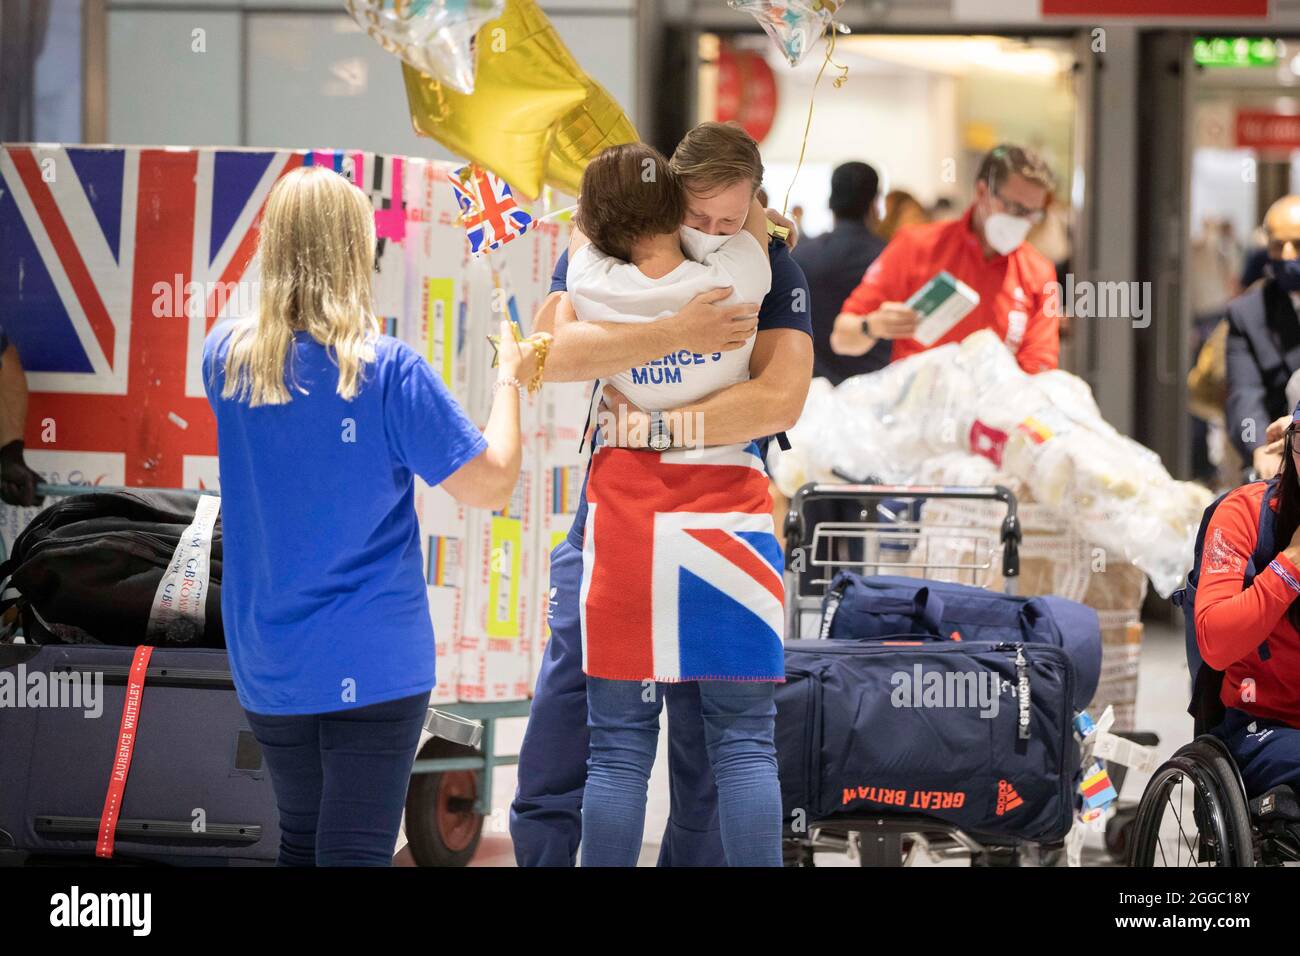 Goldmedaillengewinnerin Laurence Whiteley wird von seiner Mutter begrüßt, als er von den Paralympischen Spielen in Tokio 2020 am Flughafen London Heathrow ankommt. Bilddatum: Montag, 30. August 2021. Stockfoto